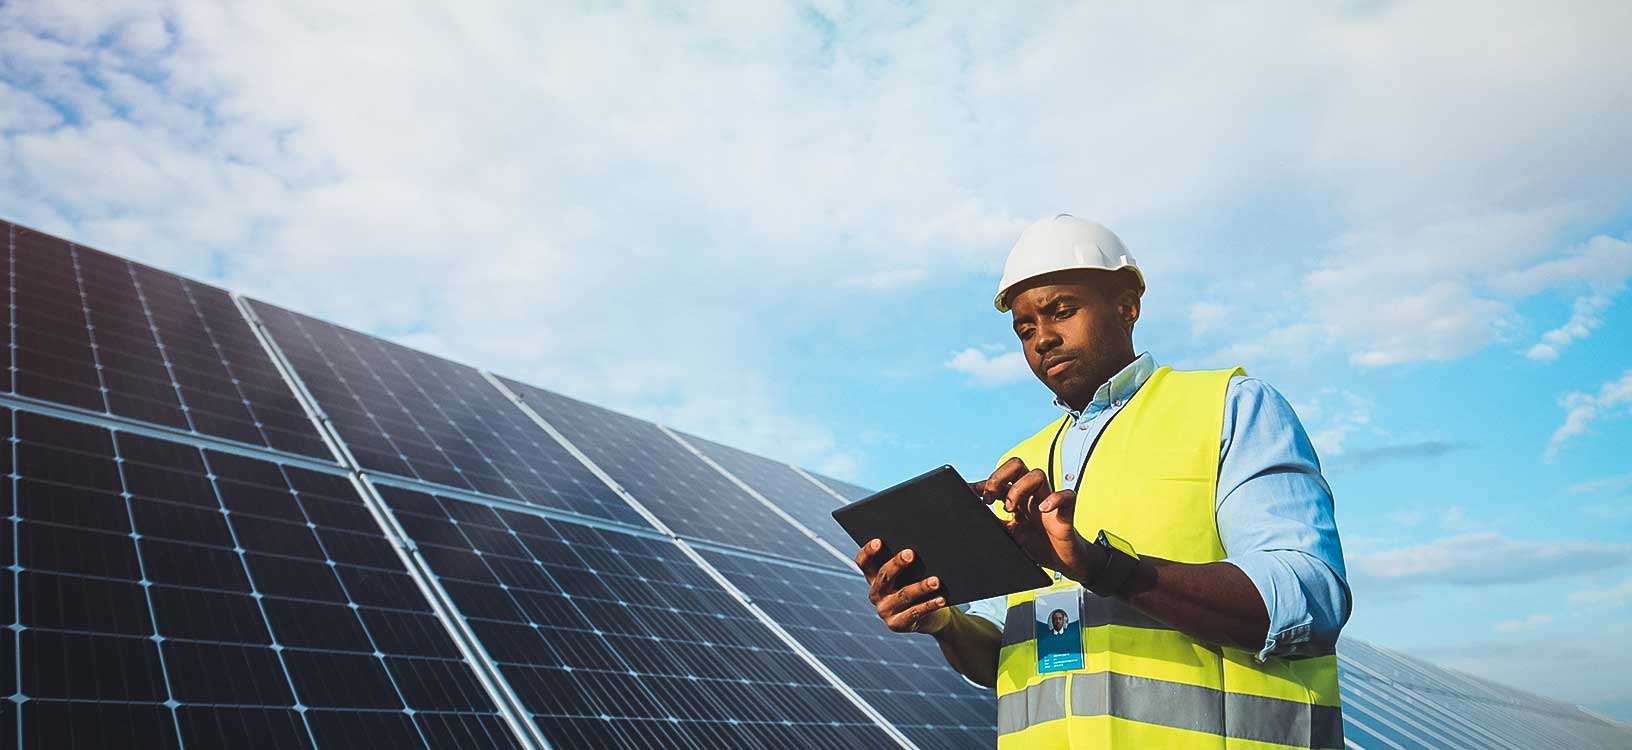 Gerente de operações verifica o status operacional atual de um parque de energia solar usando um tablet.